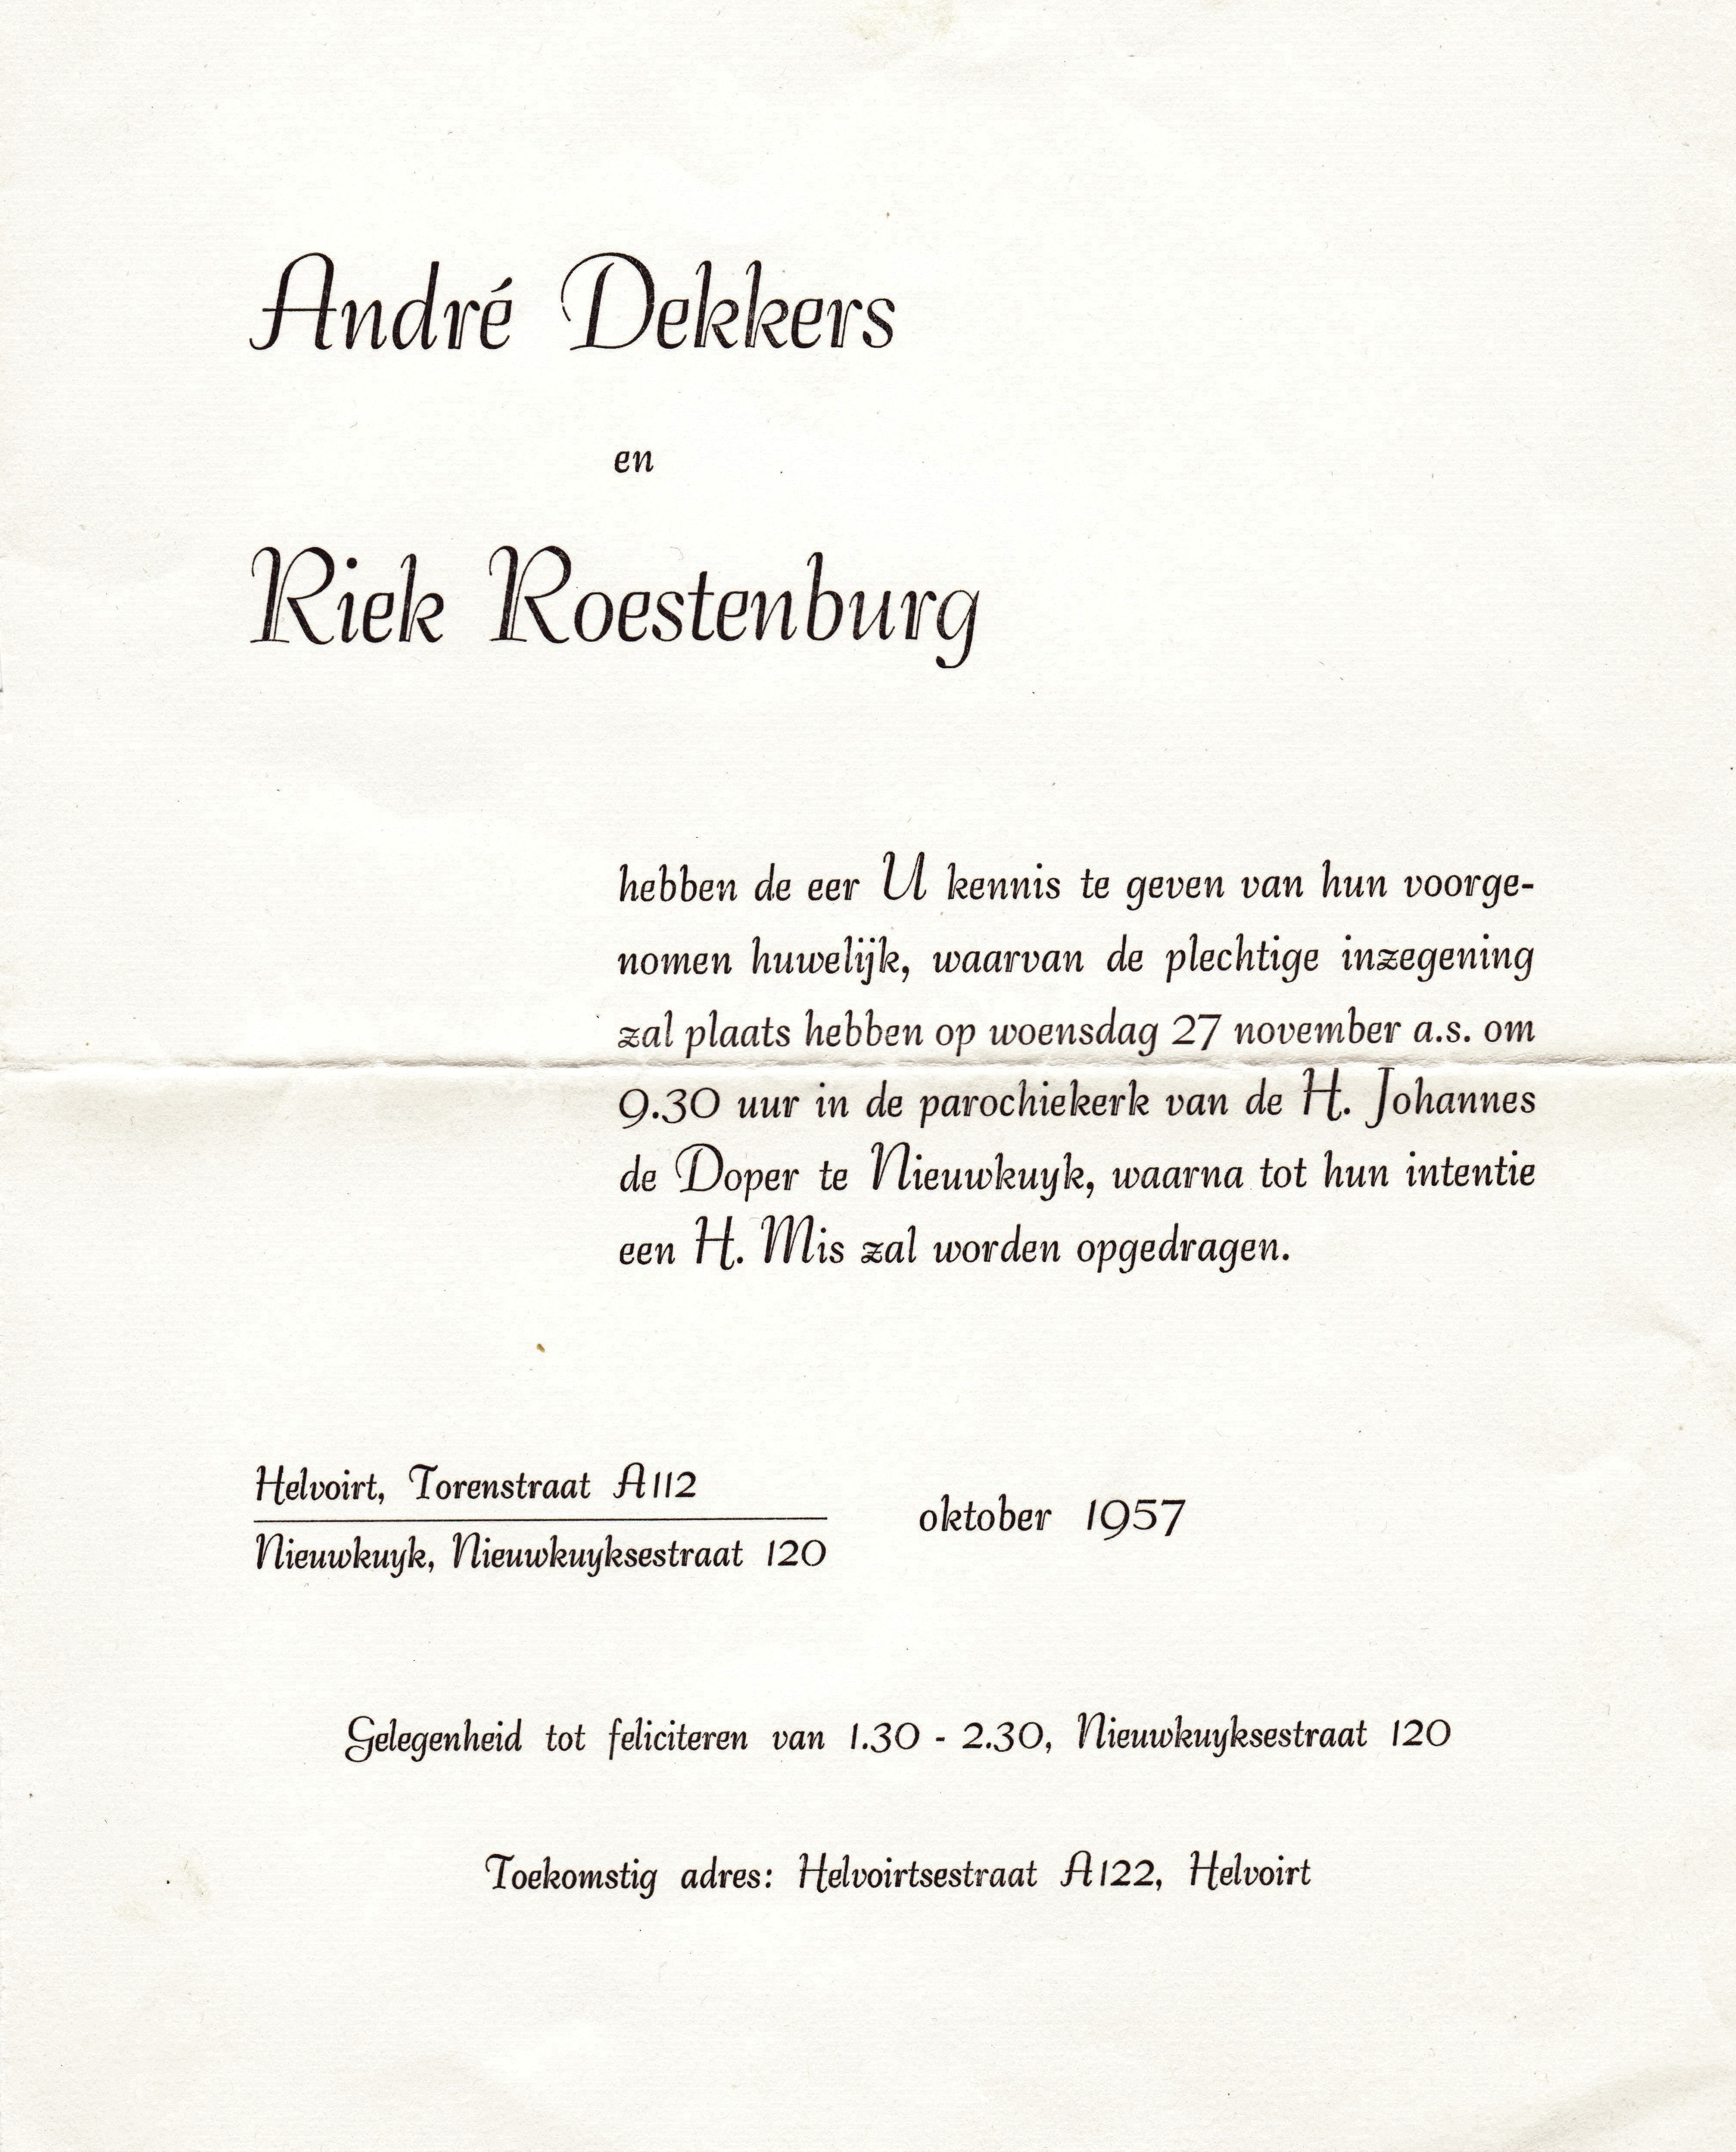 dekkers_andré__en_riek_roestenburg_treden_in_het_huwelijk_op_27_november_1957_in_nieuwkuyk__kennisgevingsbrief.jpeg